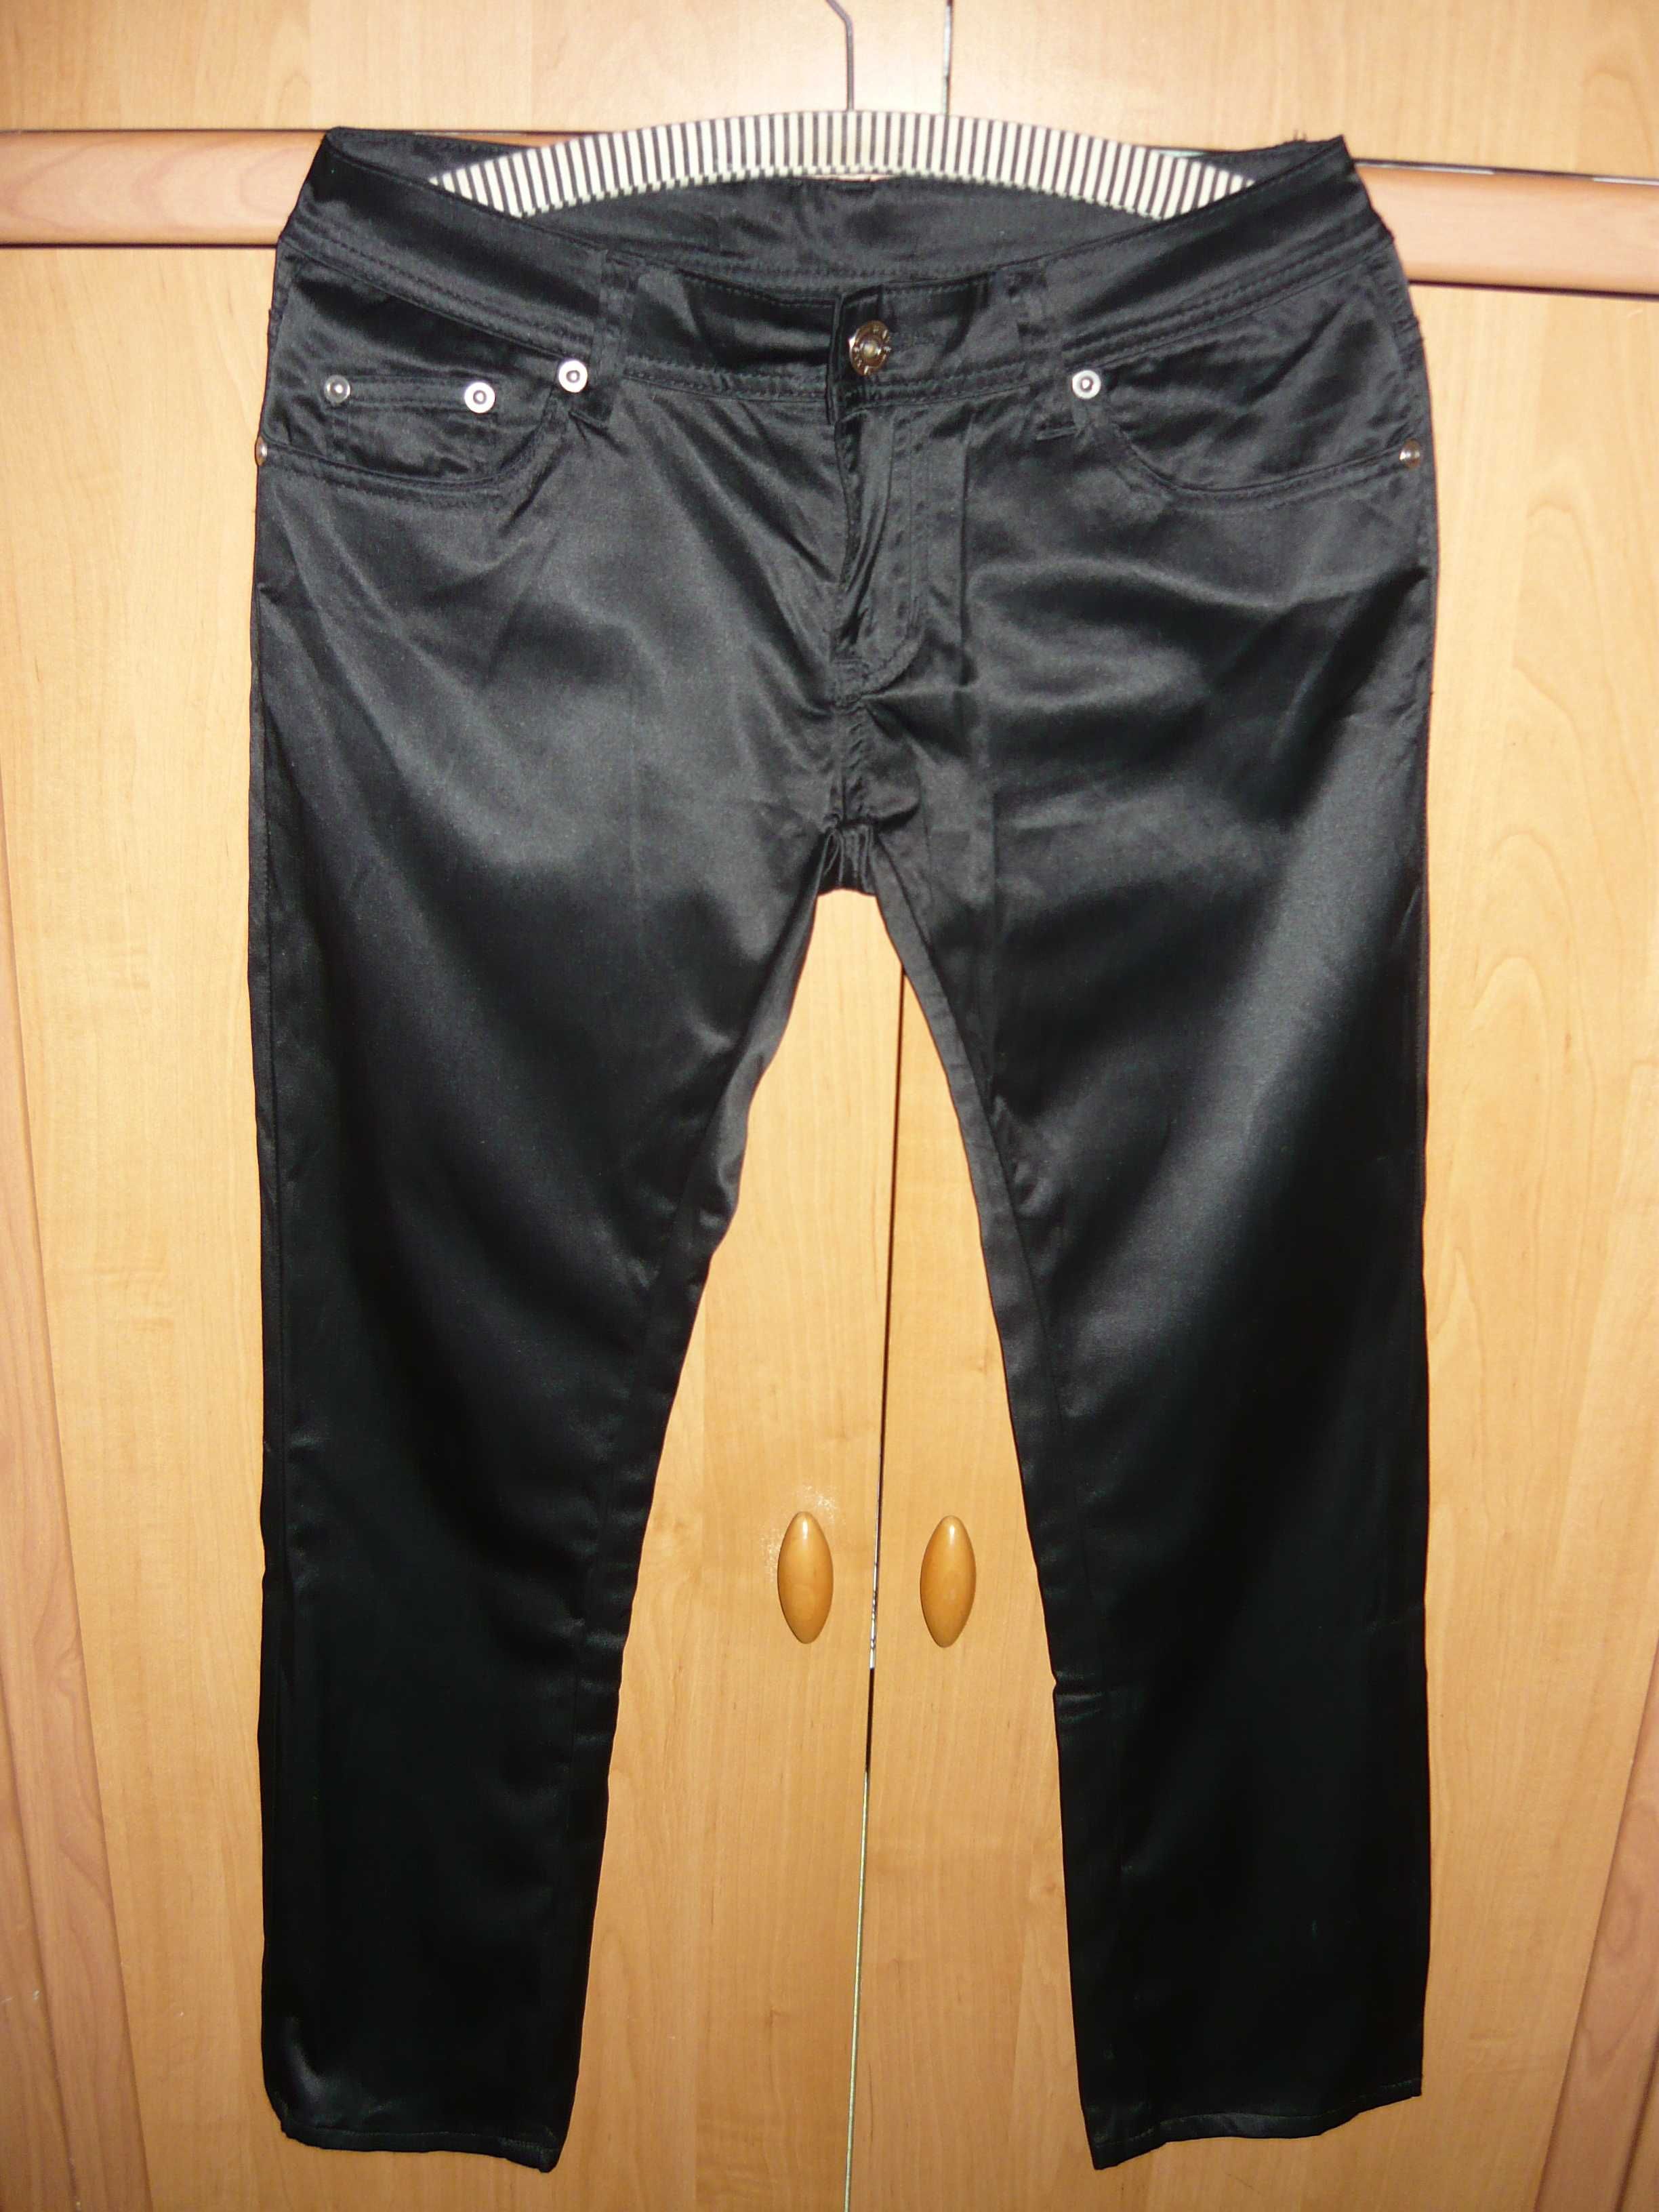 Spodnie jeans, czarne, satyna, śliskie, połyskujące r. 38 M